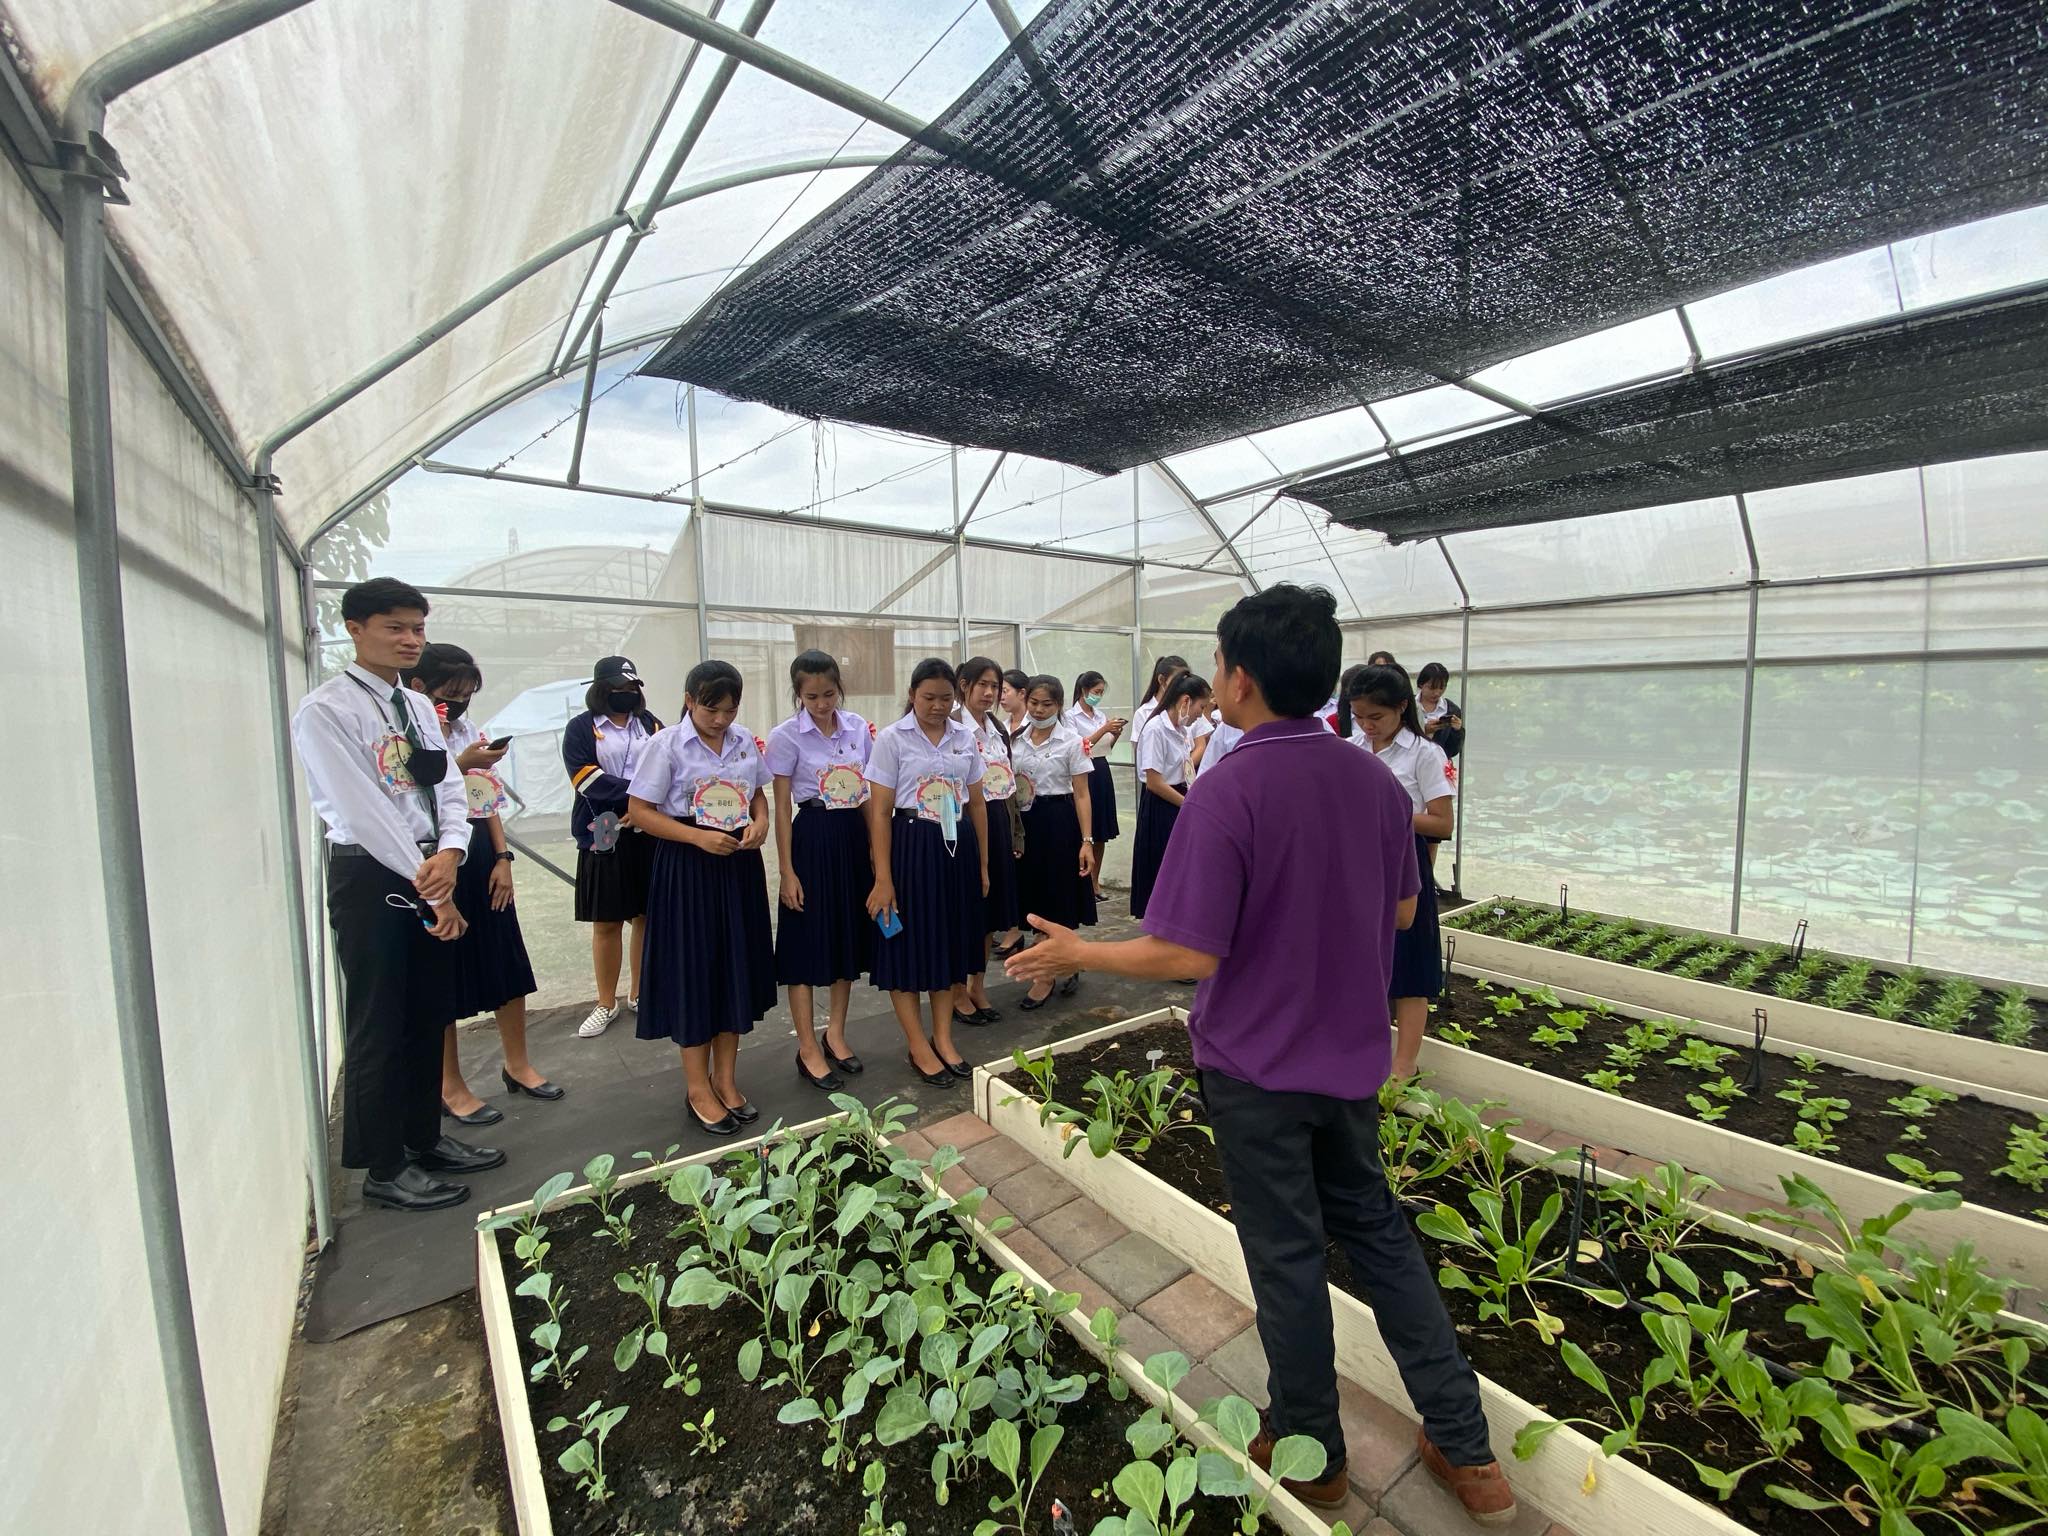 27 สิงหาคม 2563 งานวิชาศึกษาทั่วไปนำนักศึกษาเข้าเรียนรู้ ณ โครงการอนุรักษ์พันธุกรรมพืช เวลา 09.30 -11.00 น